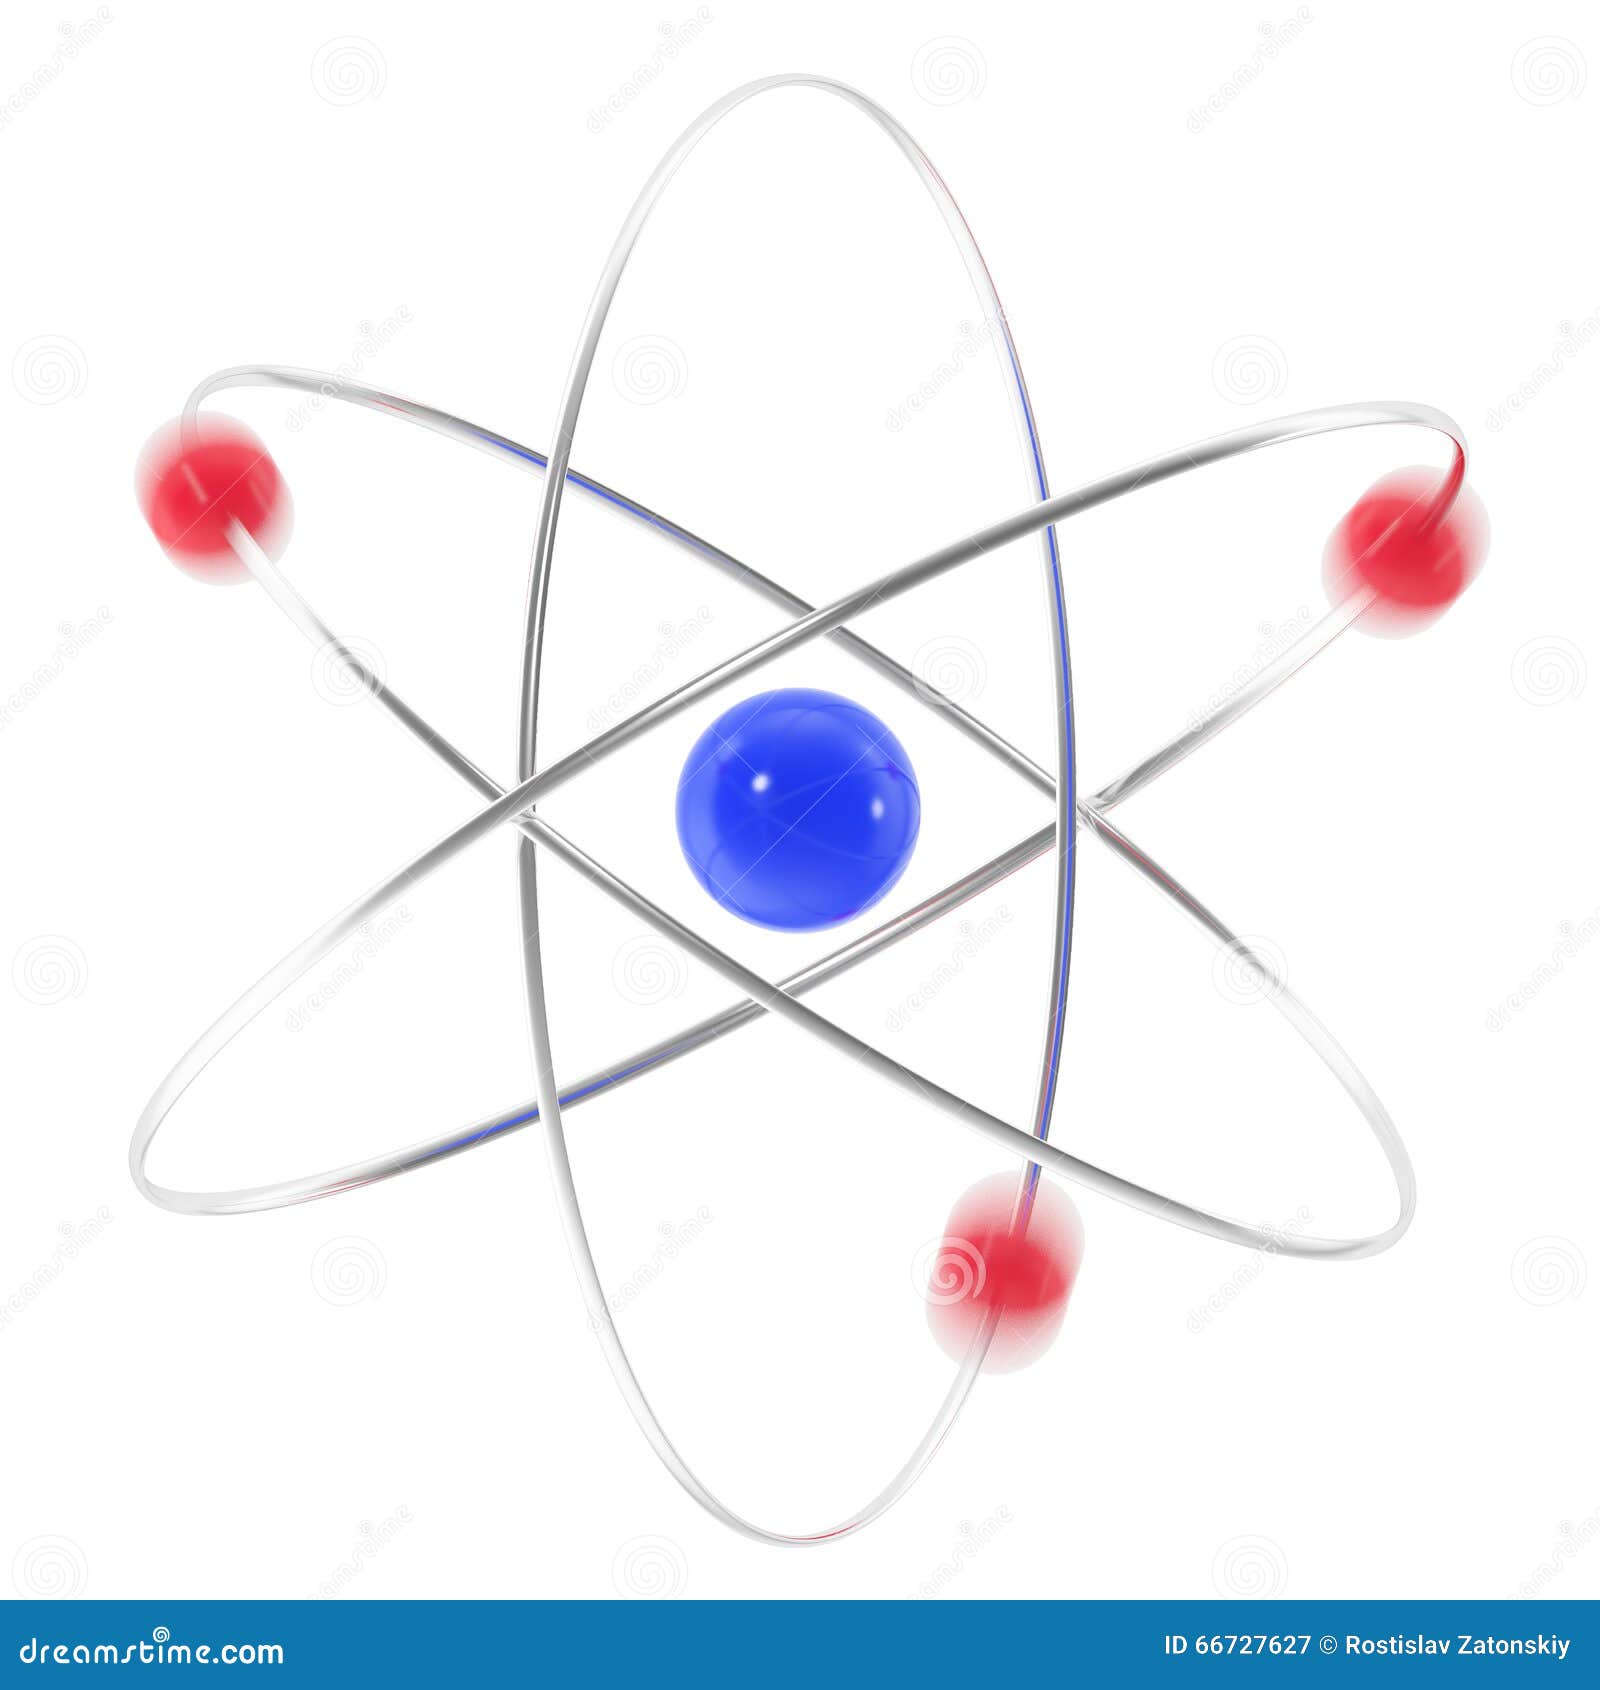 Изолируемые атомы. Атомная сфера. Ядерная сфера рисунок. Нанохимия фон. Шаблоны для презентации на тему атомы движения фиолетового цвета.